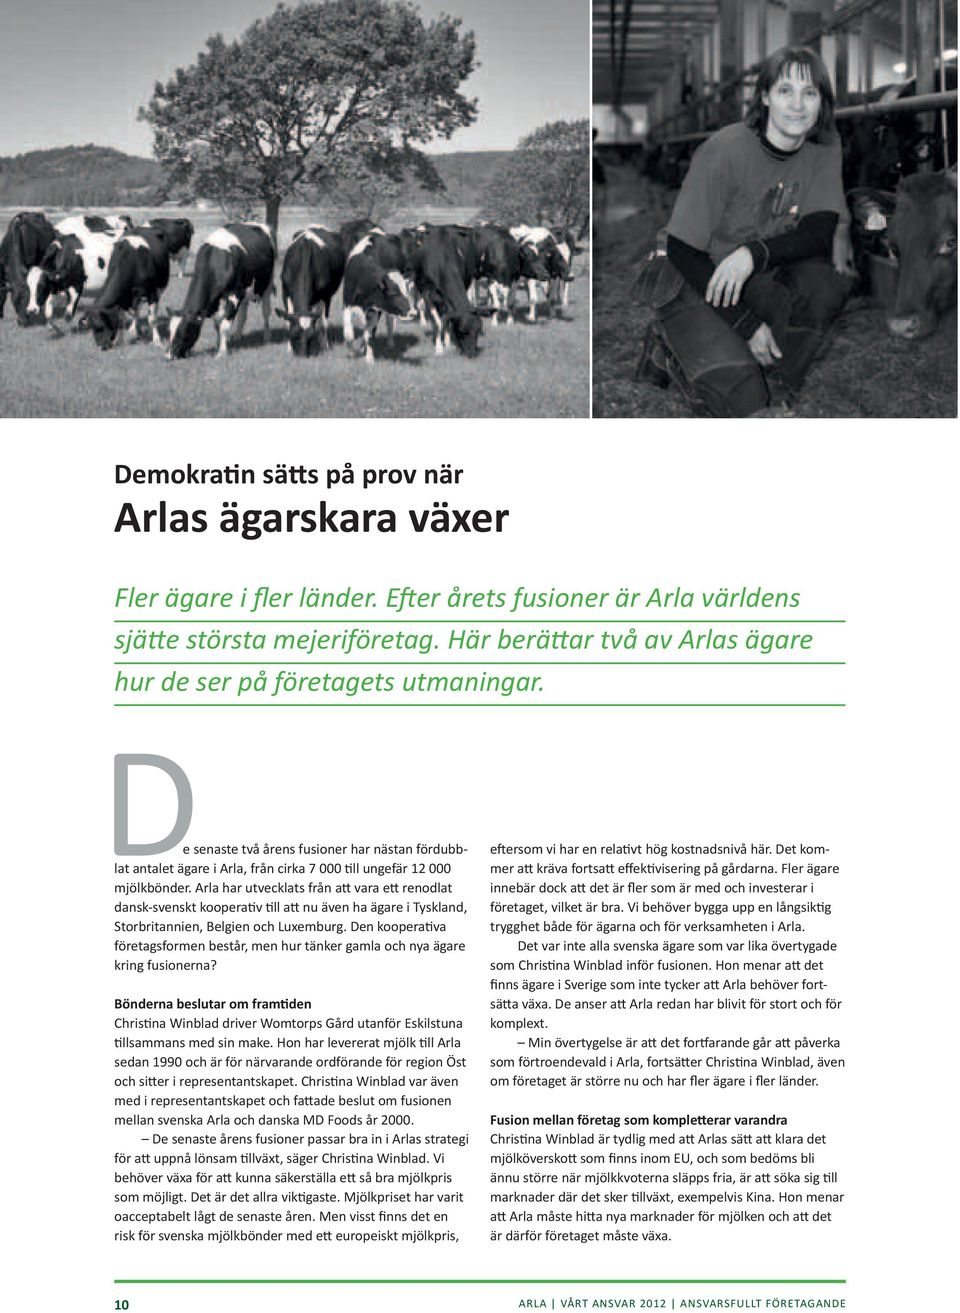 Arla har utvecklats från att vara ett renodlat dansk-svenskt kooperativ till att nu även ha ägare i Tyskland, Storbritannien, Belgien och Luxemburg.